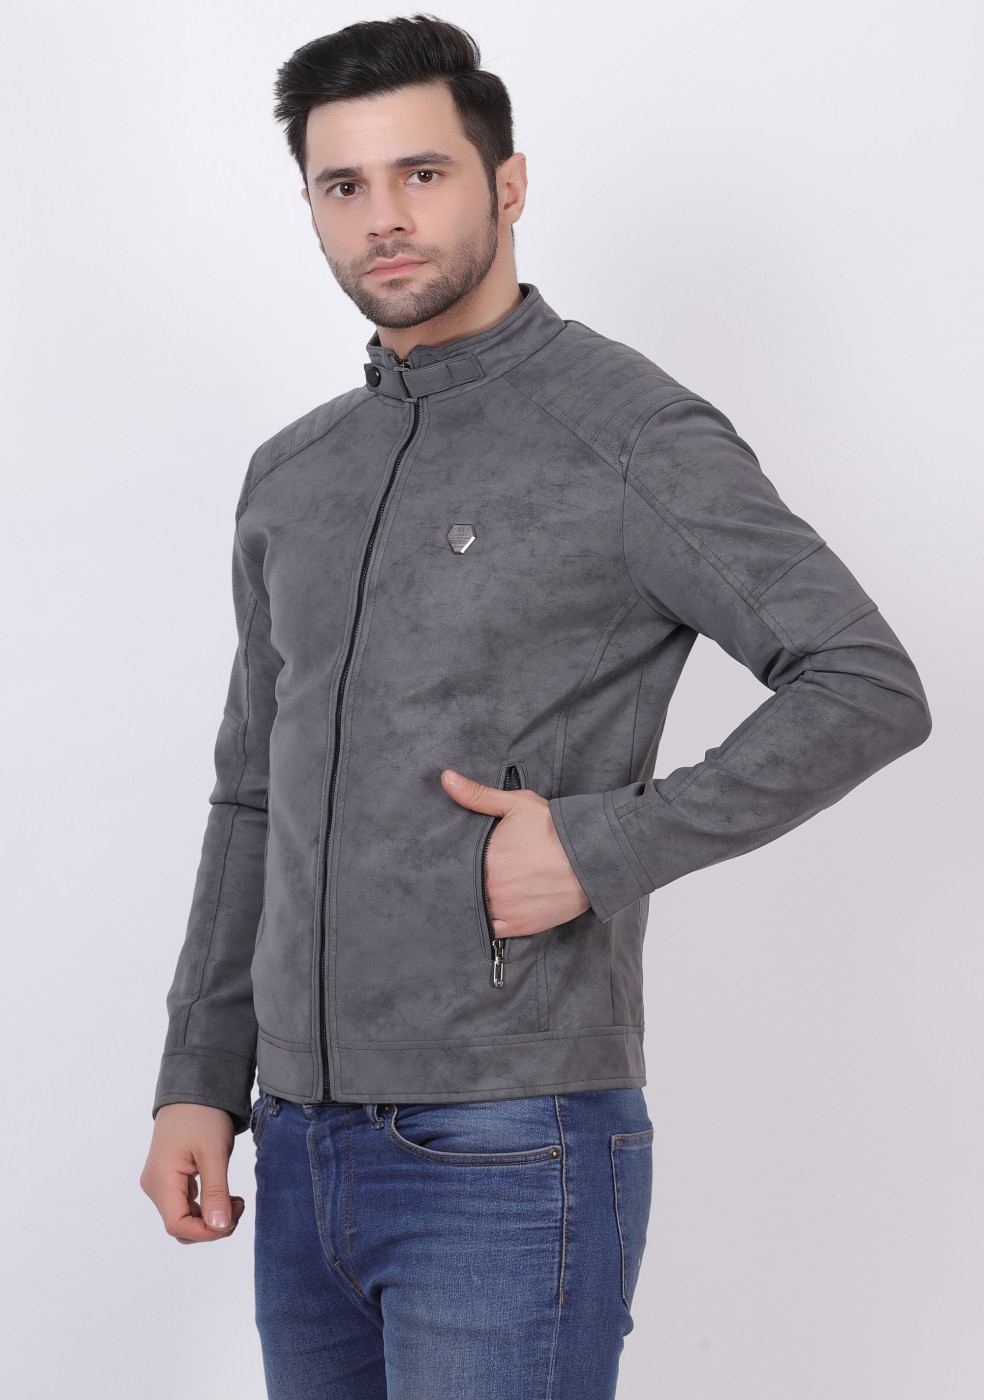 Men Stylish Gray Leather Jacket